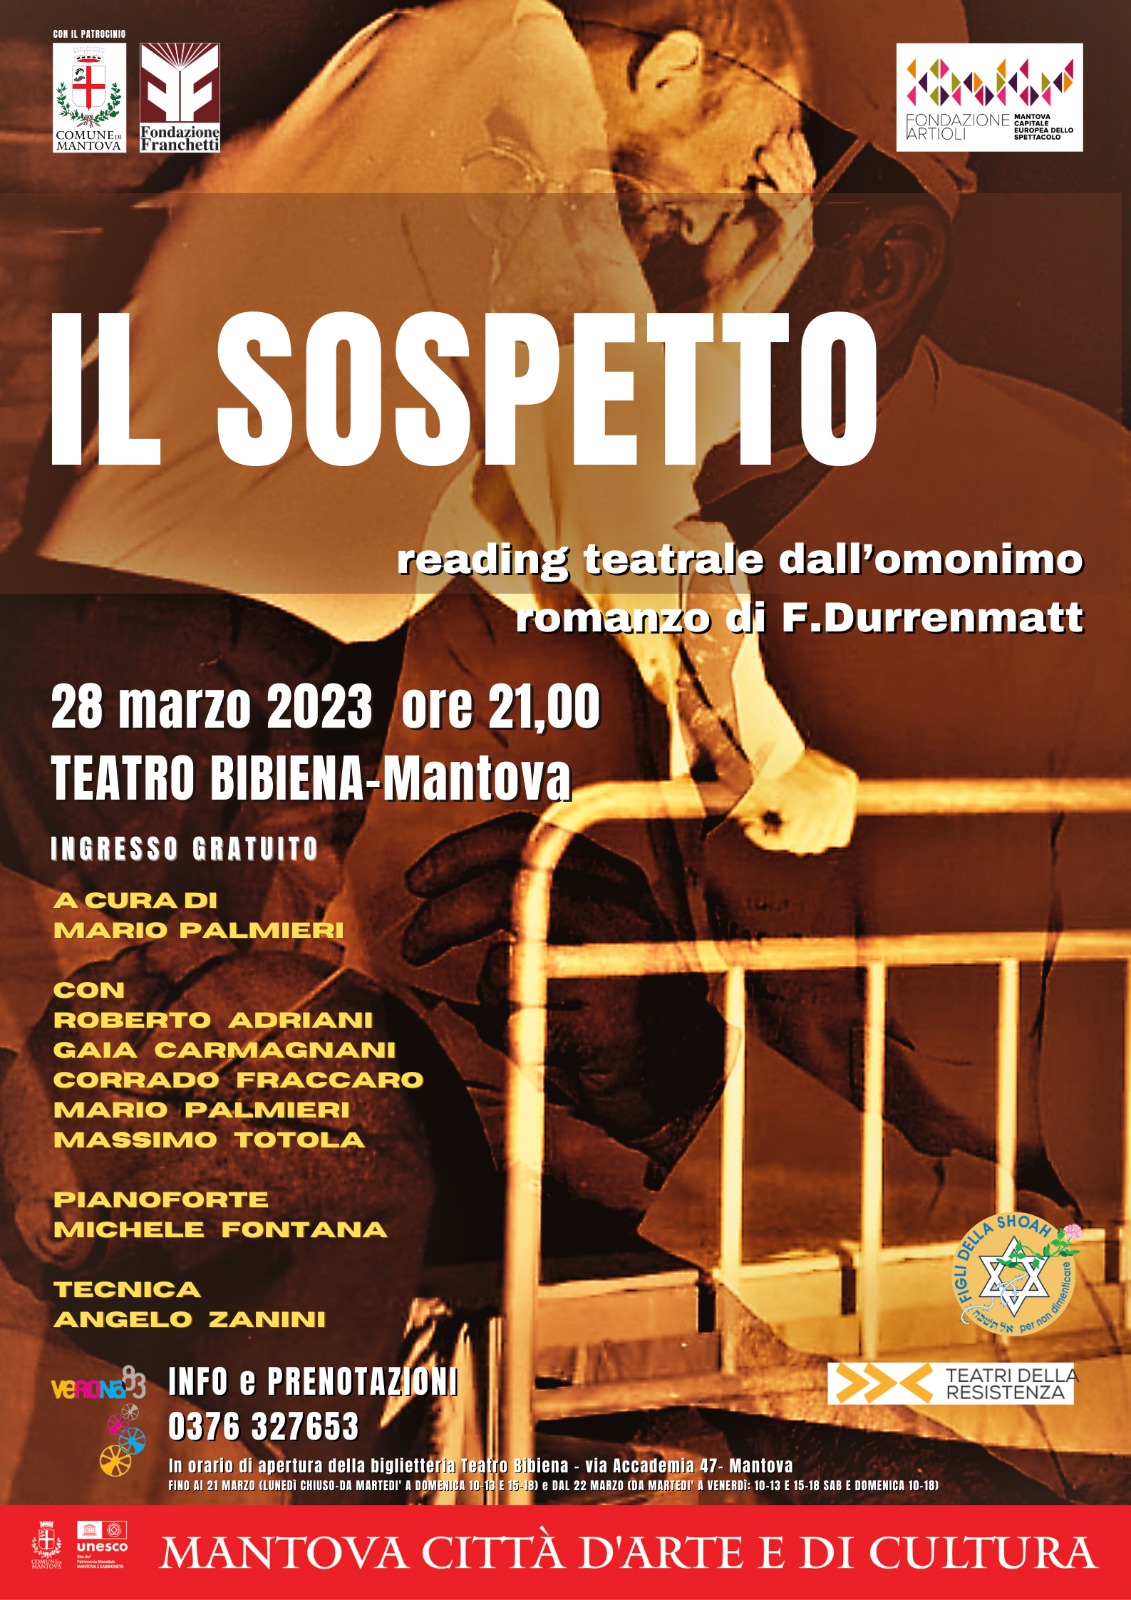 AGENDA 2023 - Reading teatrale "Il Sospetto", a Mantova